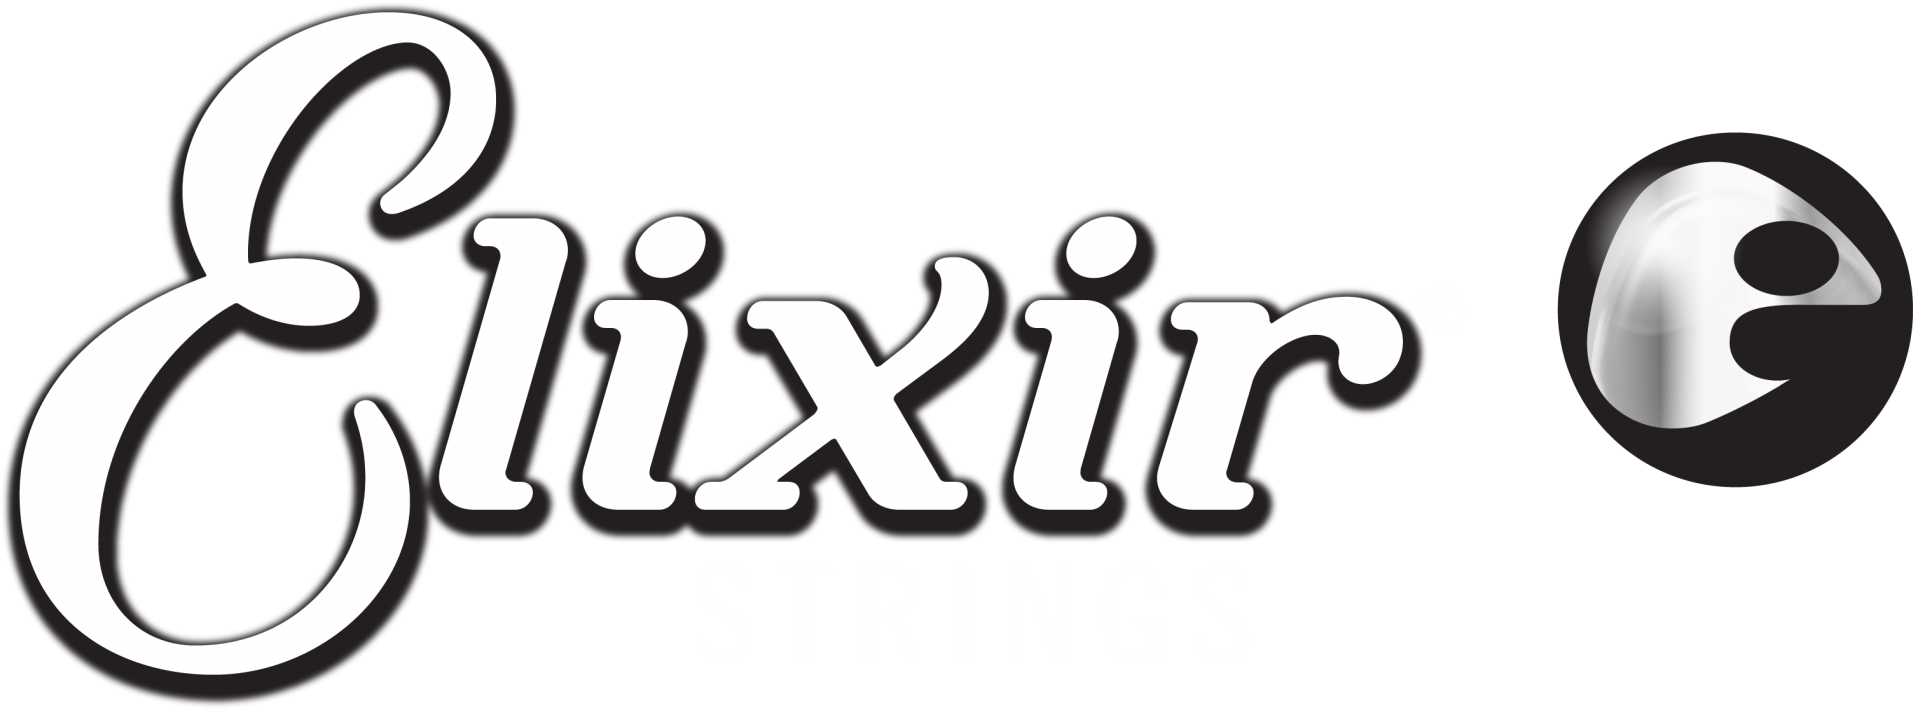 Elixir-Strings